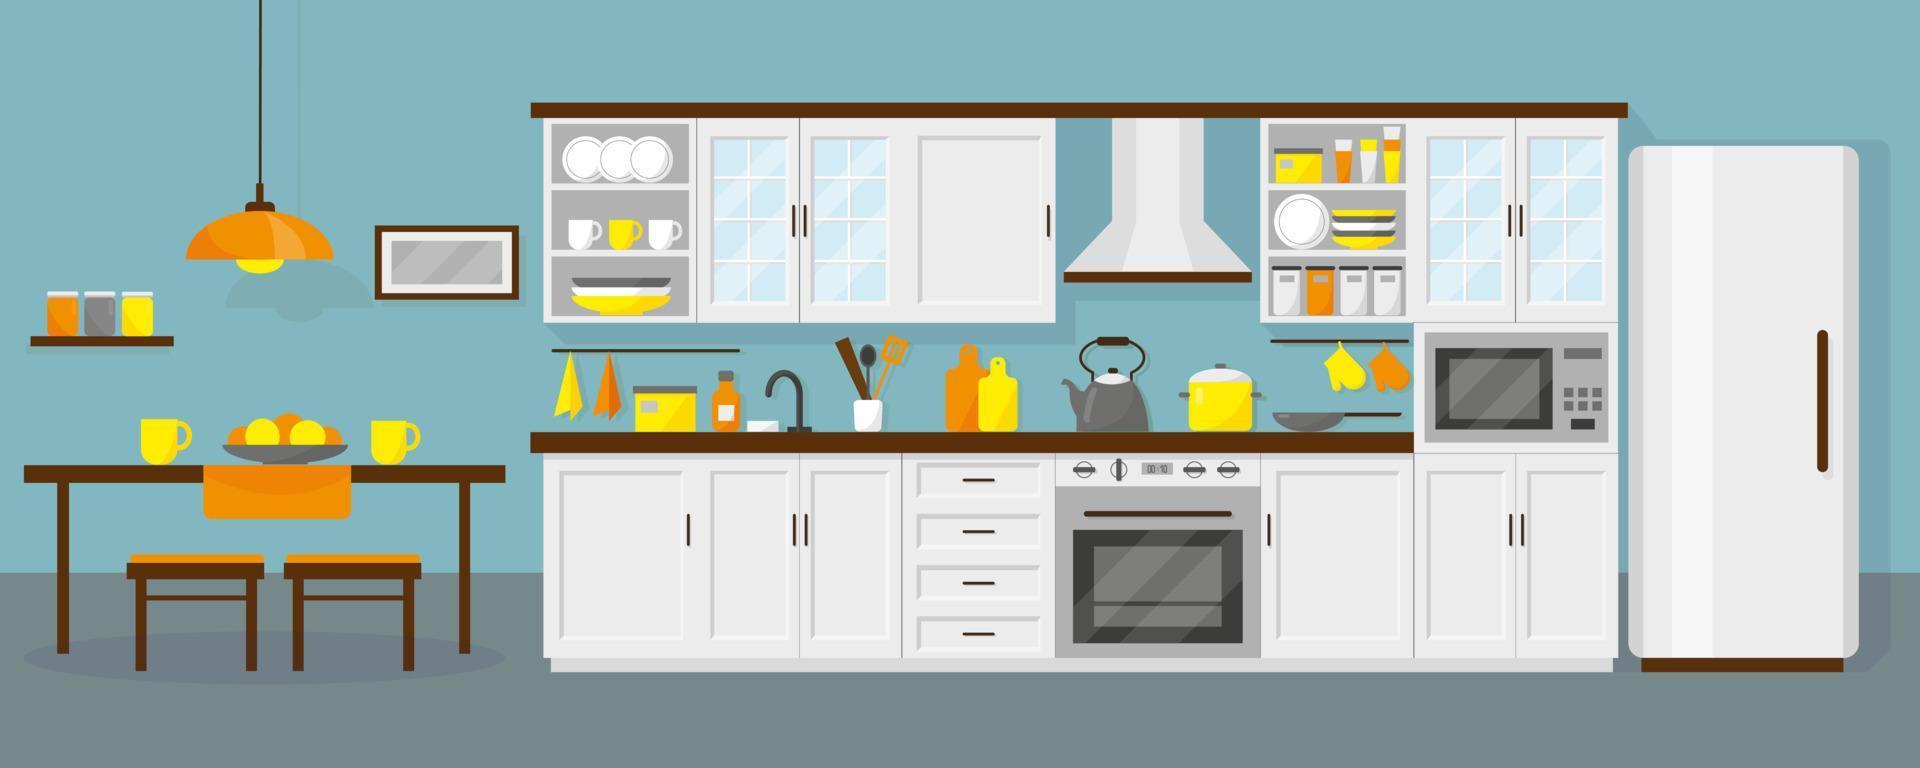 köksinredning med möbler, kylskåp, mikrovågsugn, bord och fat. blå bakgrund. vektor illustration.